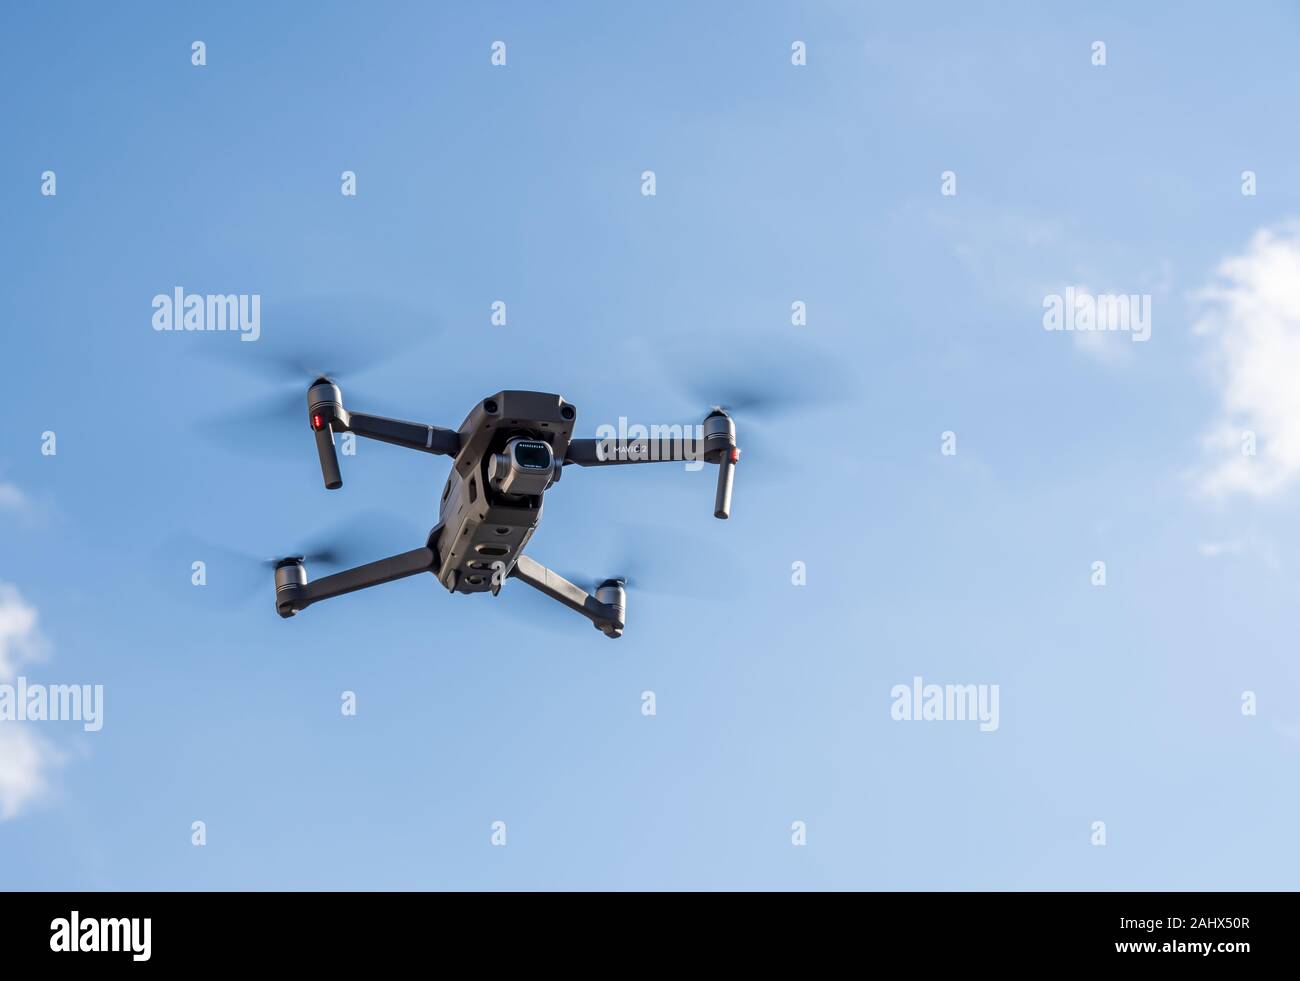 En Morgantown, WV - 1 de enero de 2020: DJI Mavic 2 Pro quadcopter o drone flotando en el cielo azul brillante Foto de stock